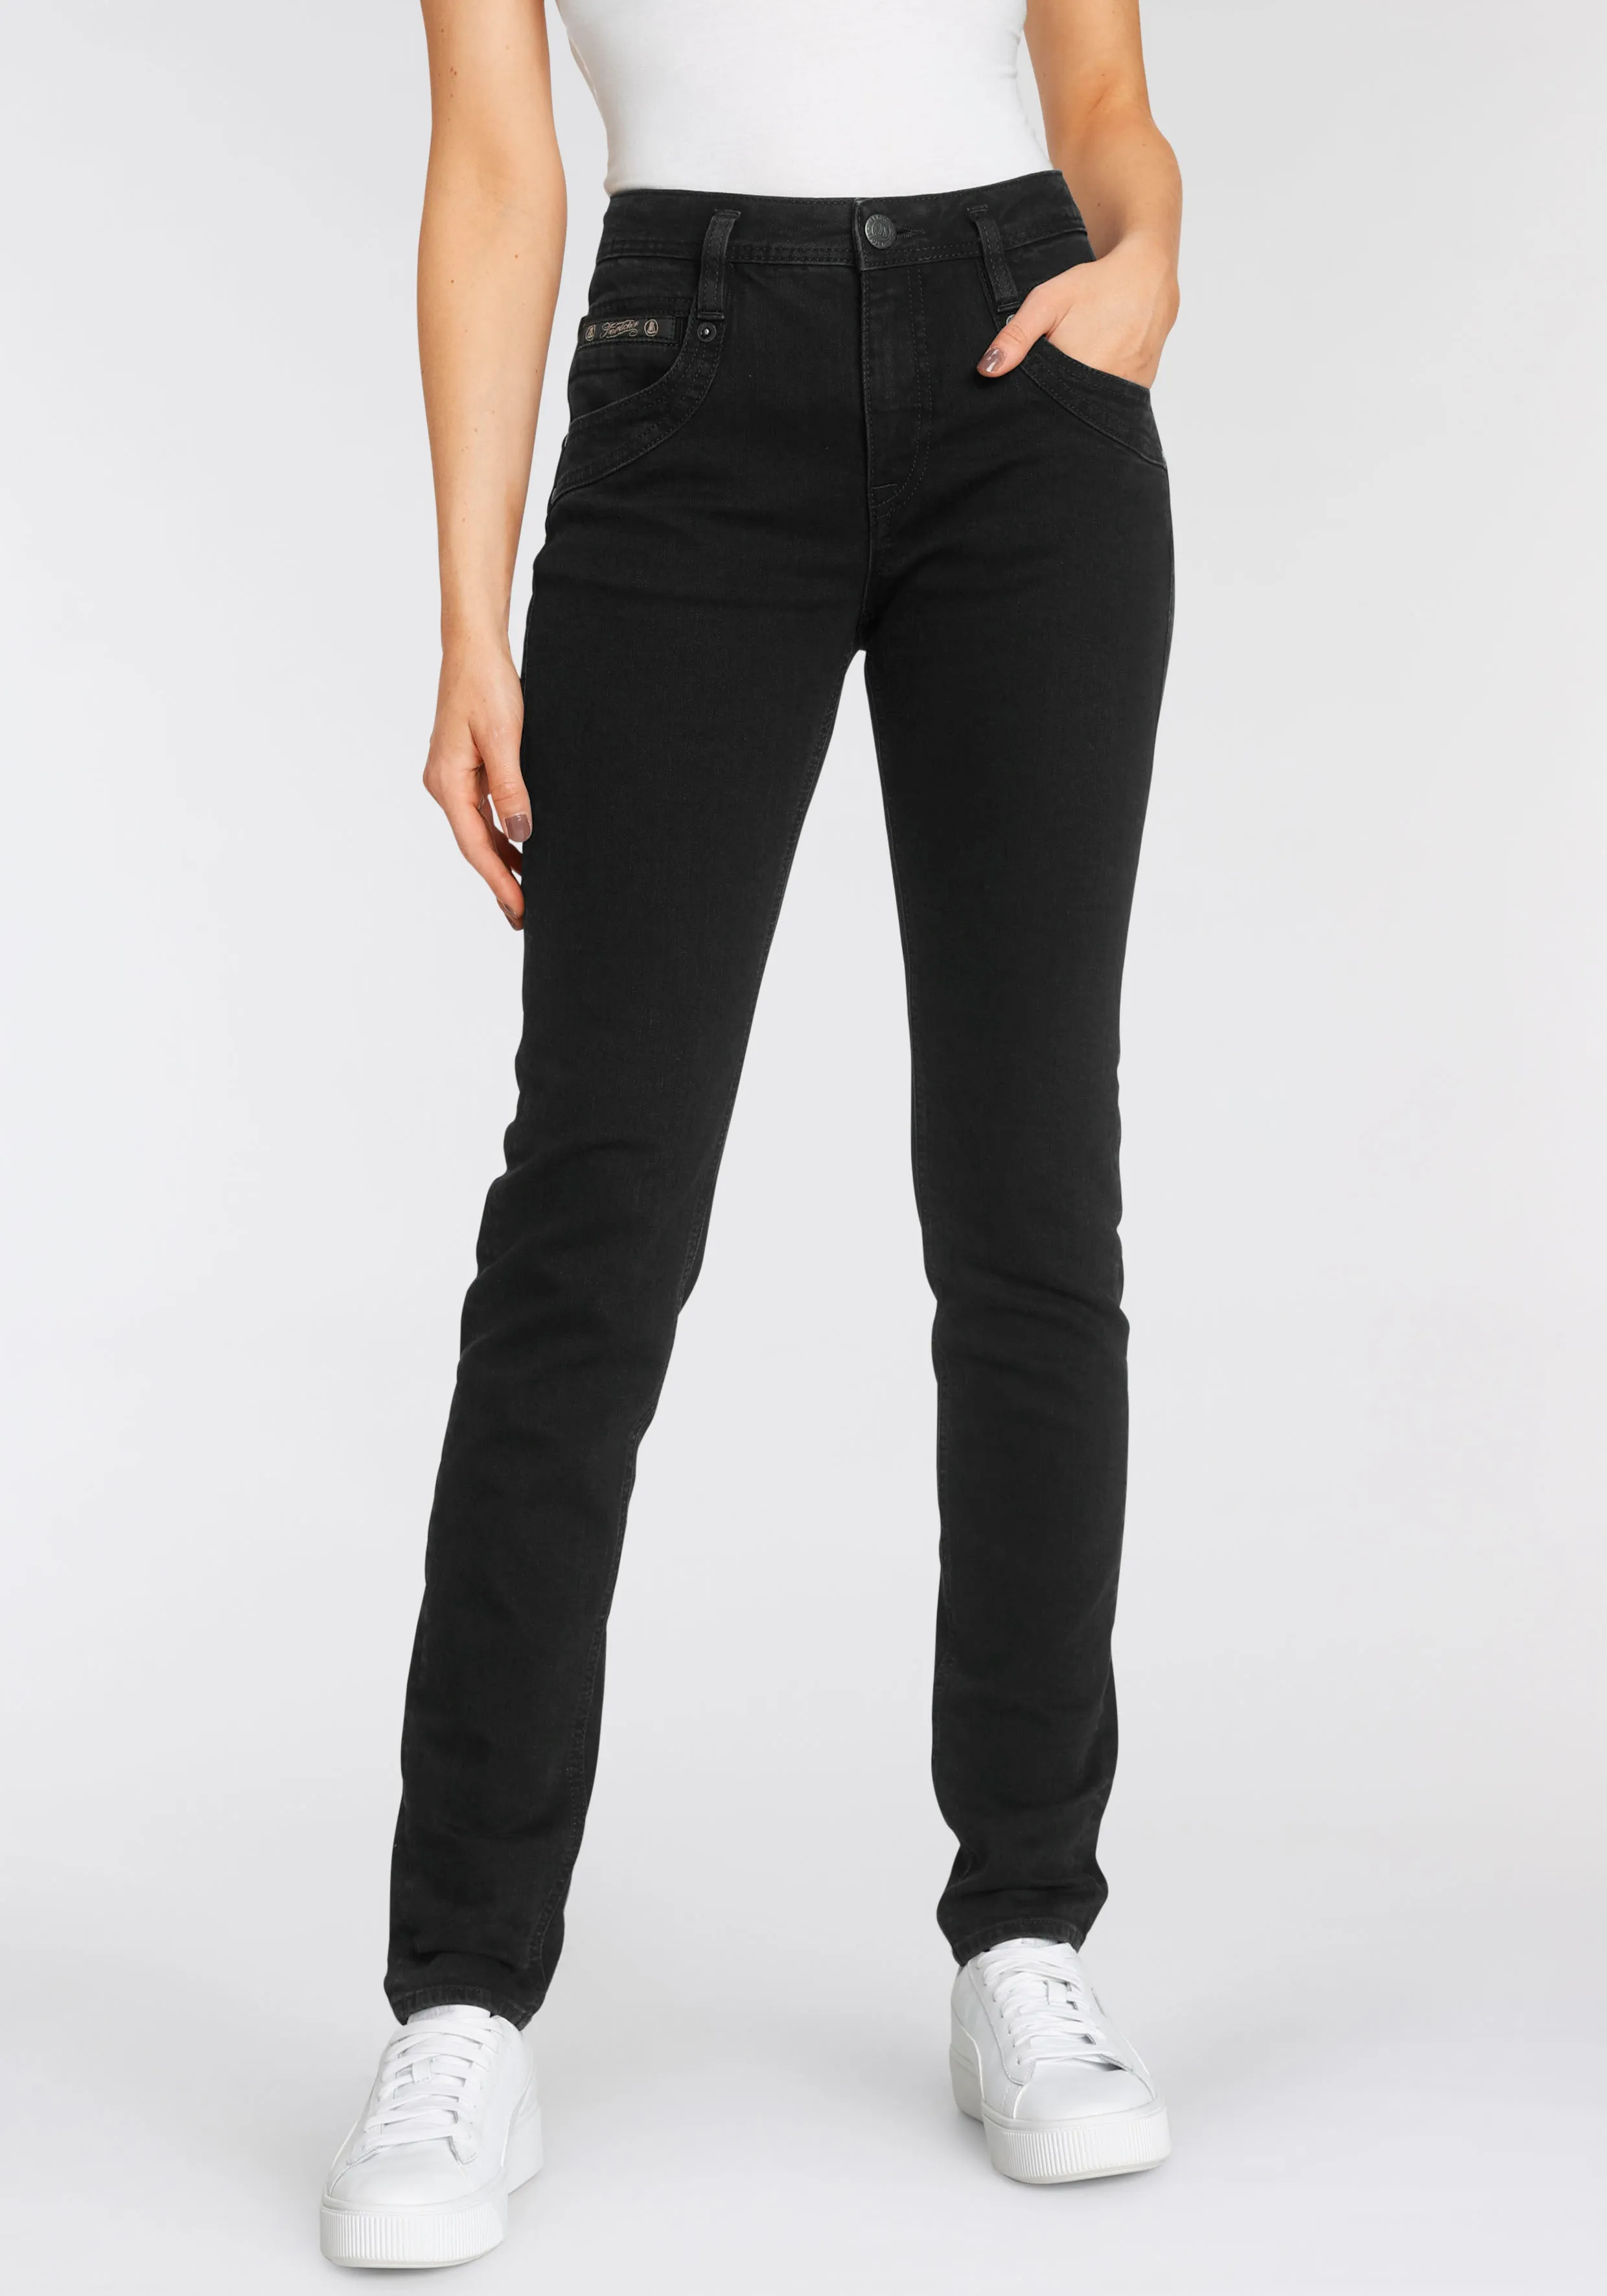 High-waist-Jeans HERRLICHER "RADINA RECYCLED DENIM" Gr. 25, Länge 30, schwarz (lamp black eco) Damen Jeans 5-Pocket-Jeans Röhrenjeans mit leichtem Push-Up-Effekt